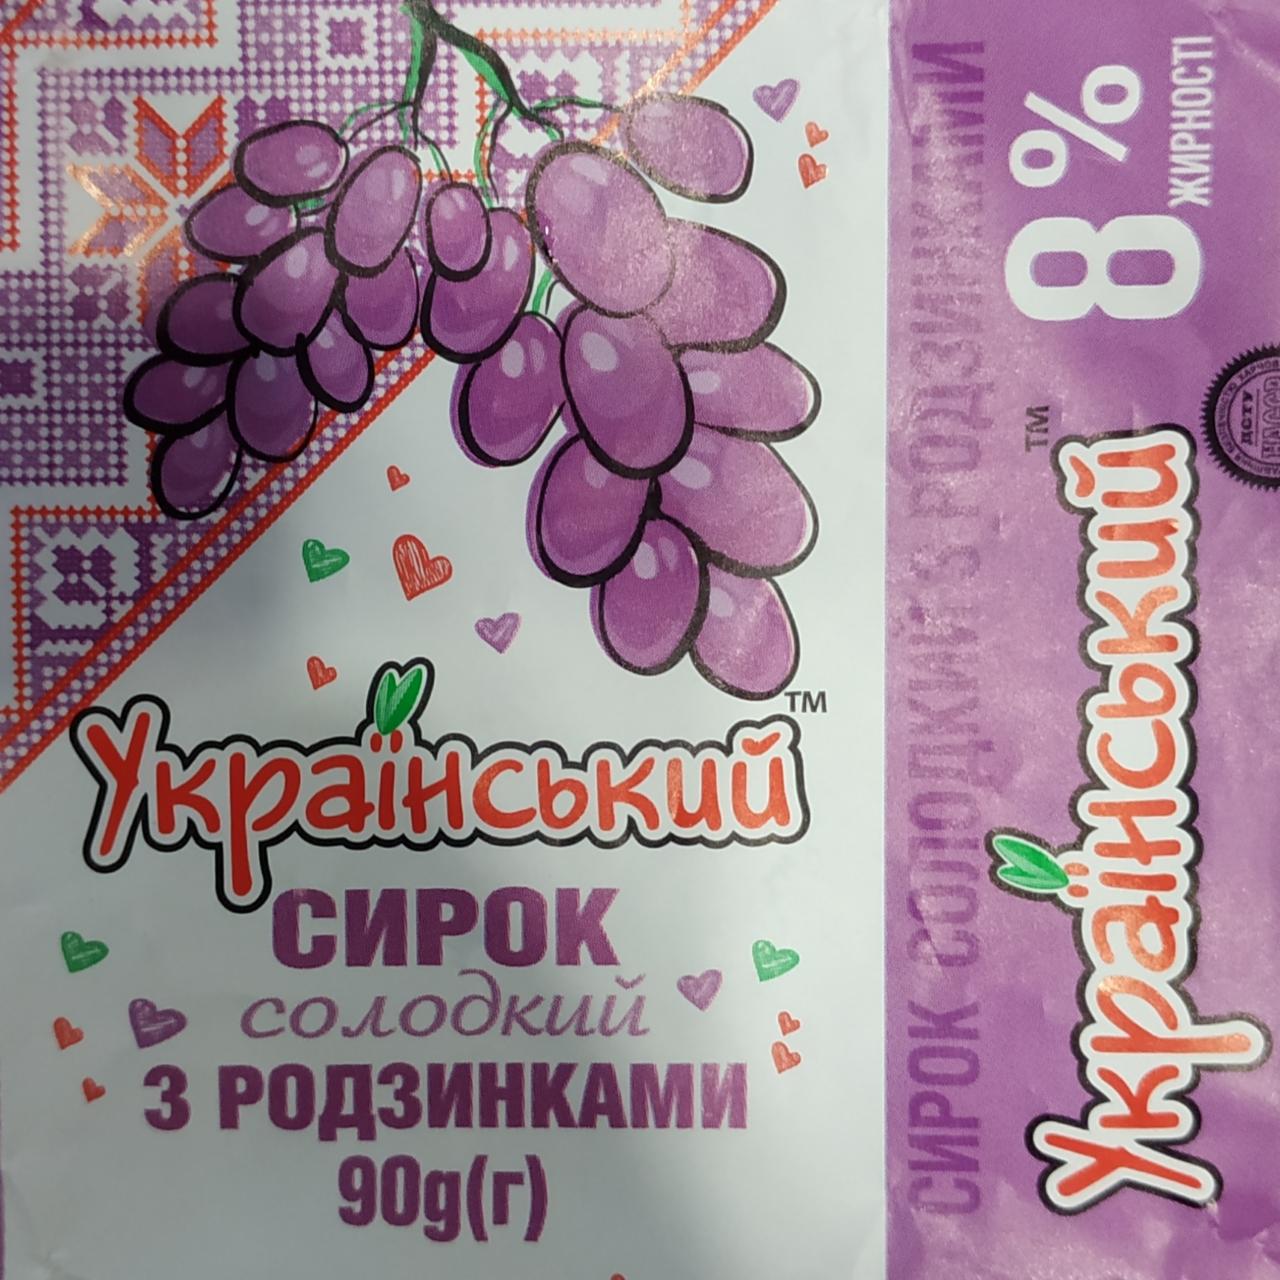 Фото - Сырок сладкий с изюмом 8% жирности Украинский